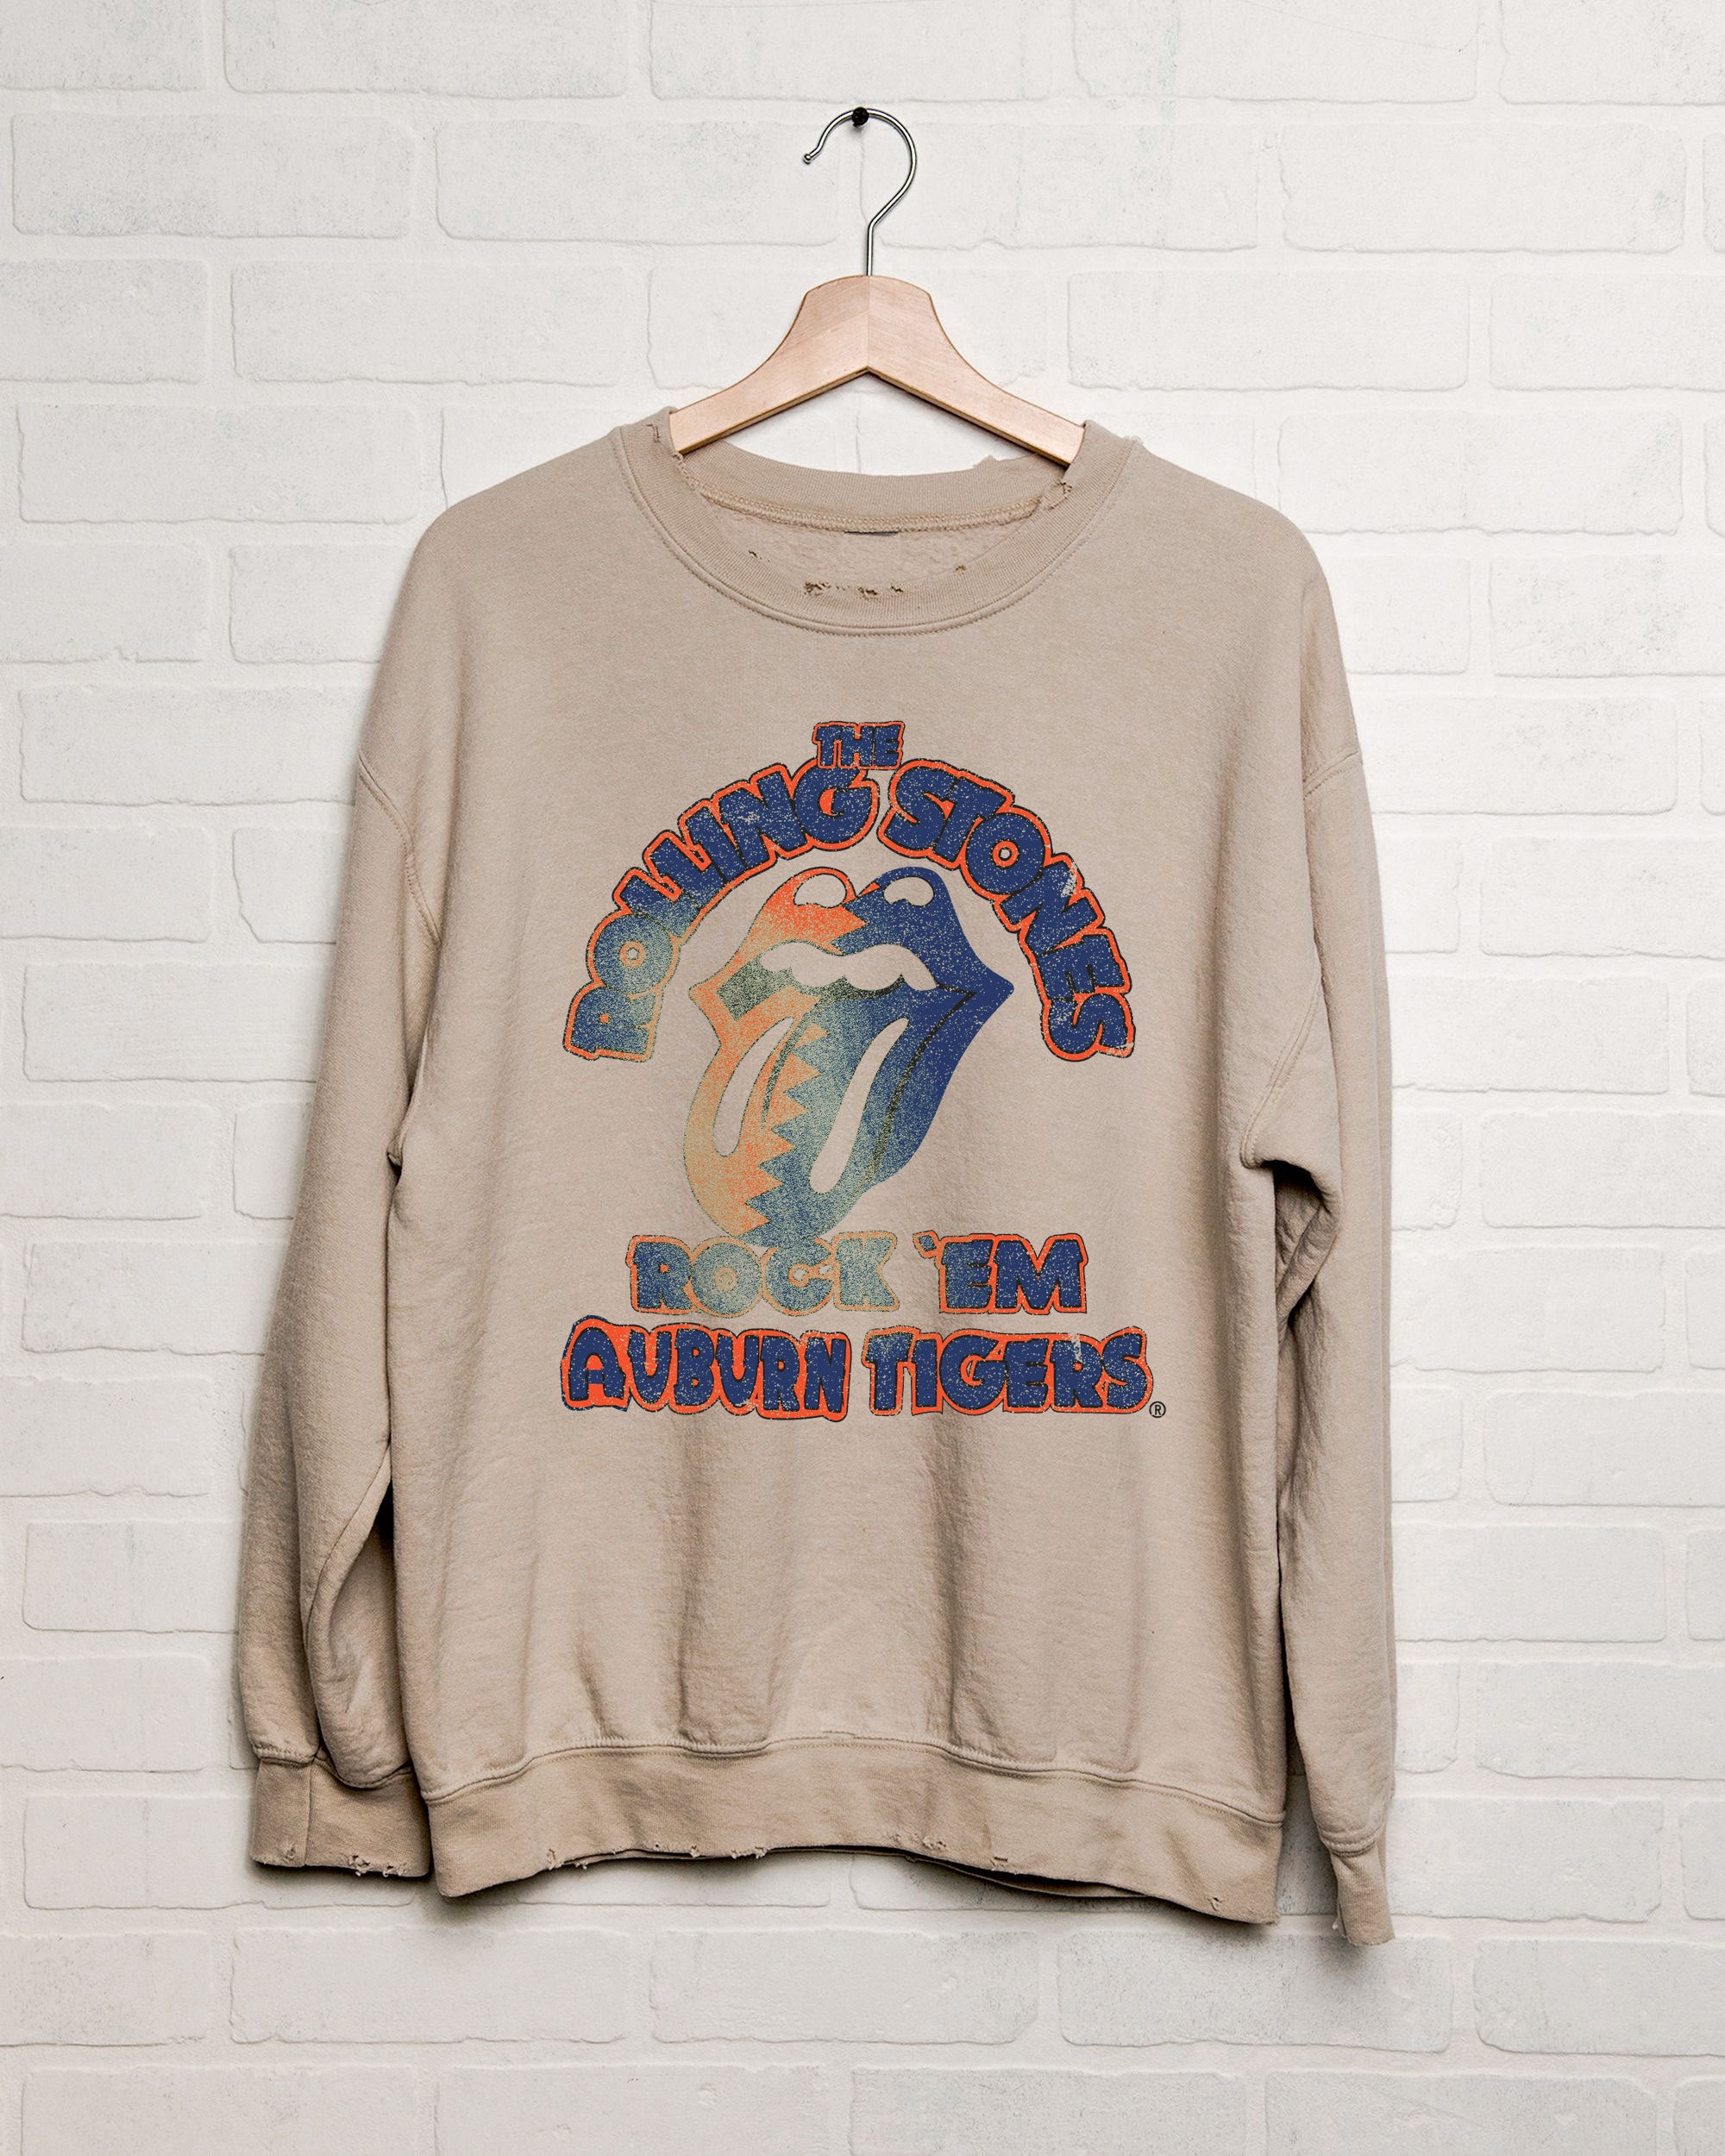 Rolling Stones Rock 'Em Auburn Tigers Sand Thrifted Sweatshirt - shoplivylu